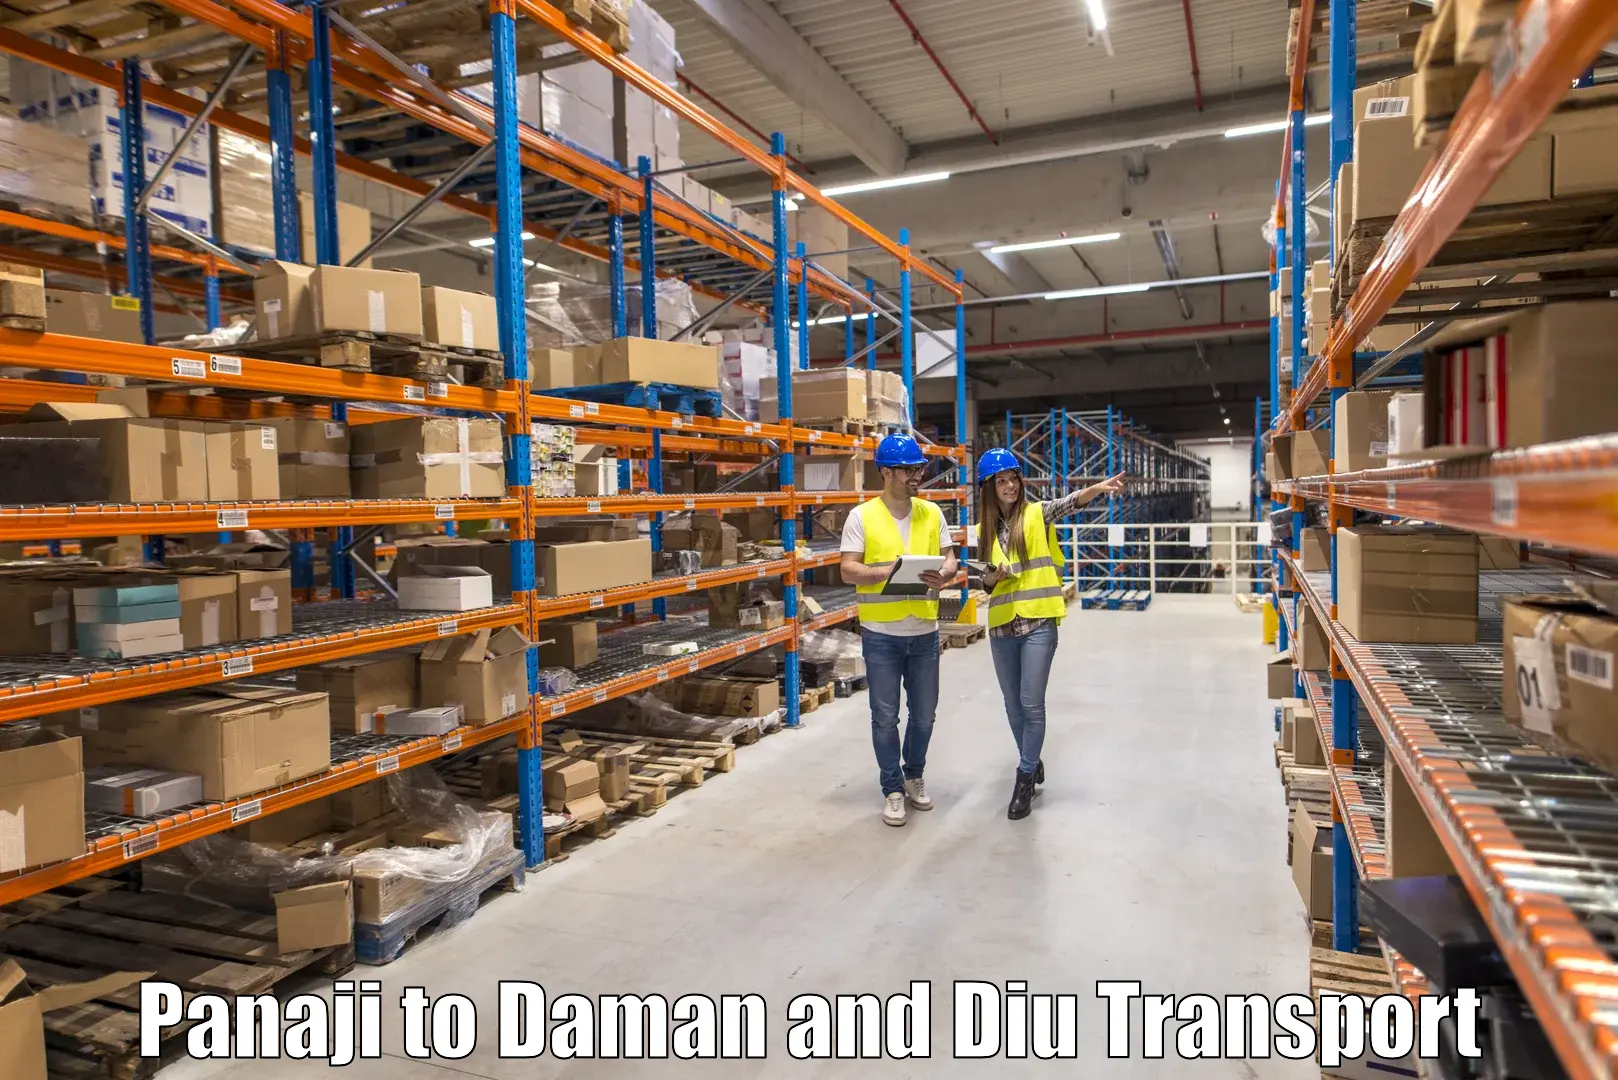 Cargo train transport services Panaji to Daman and Diu